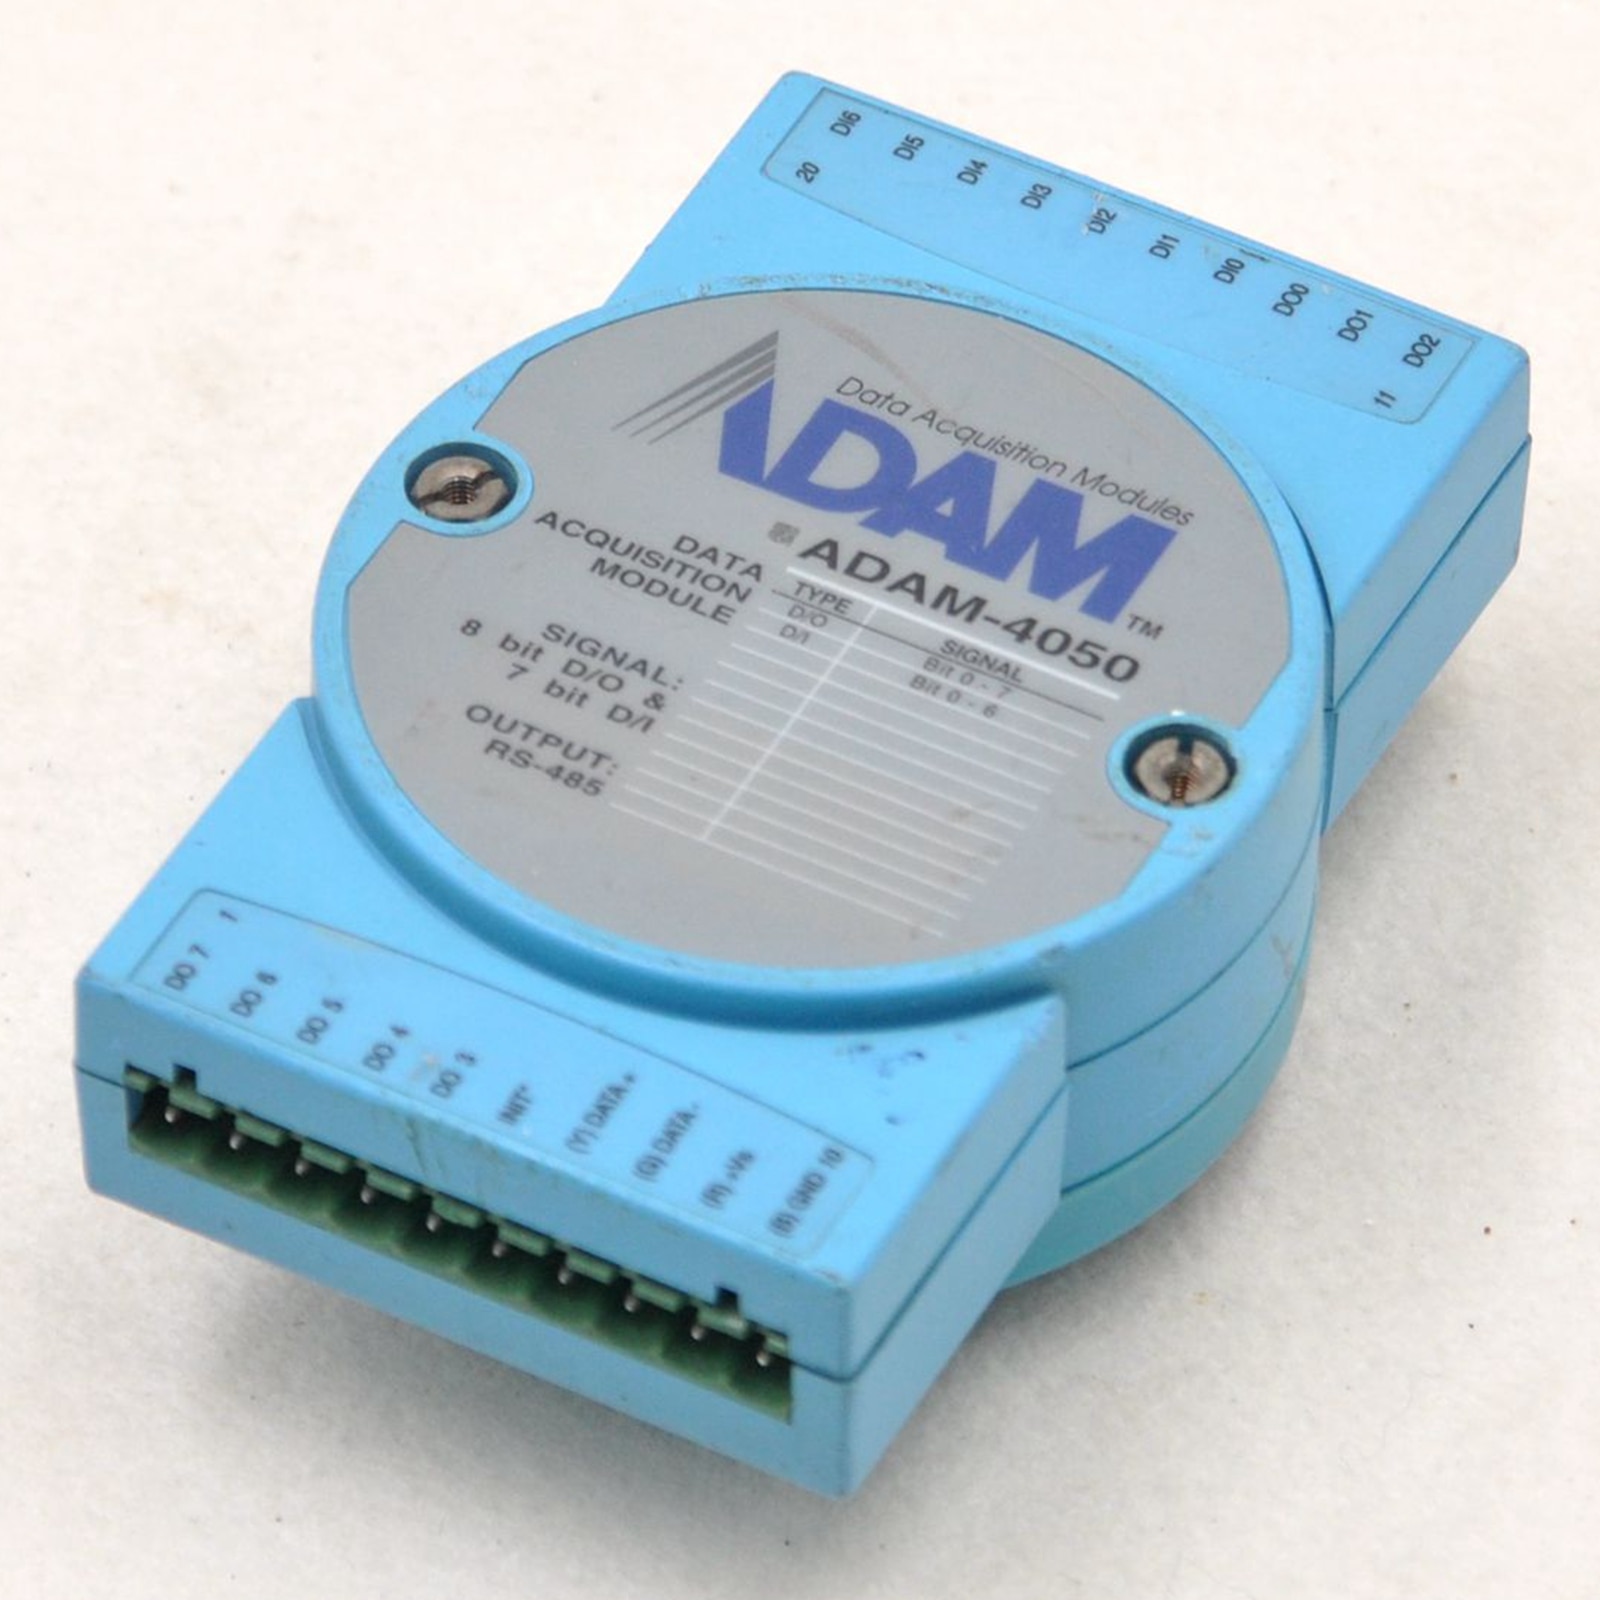 ADAM-4050